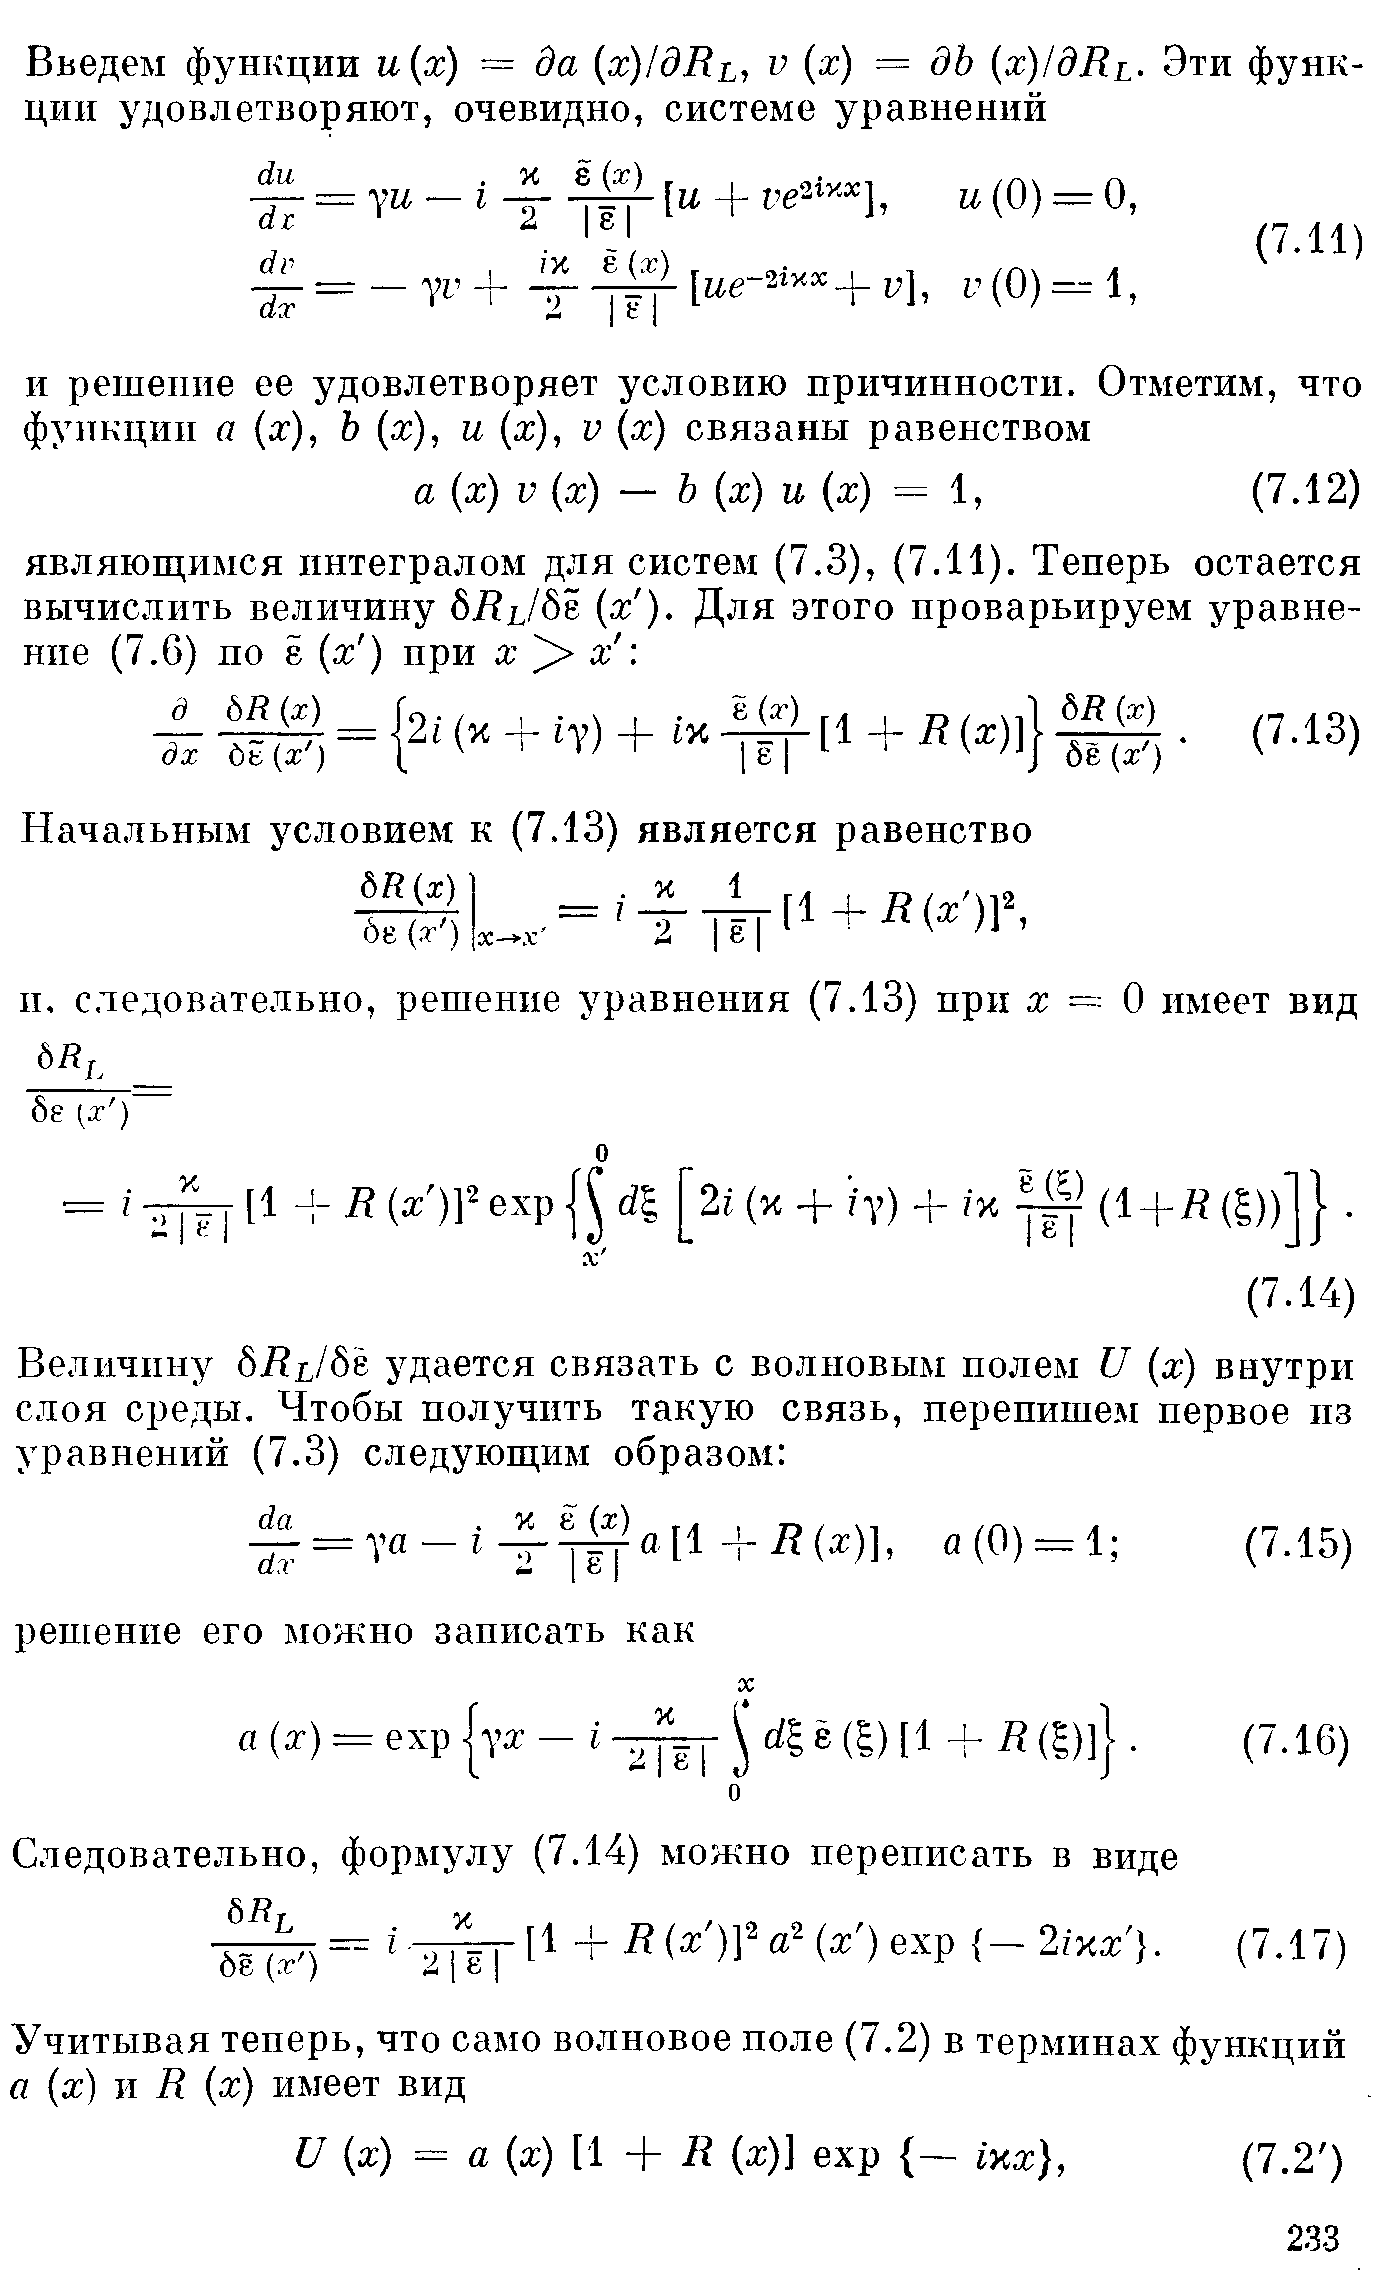 Следовательно, формулу (7.14) можно переписать в виде г- [1 +R(x )fa (ж ) ехр - 2Ых .
